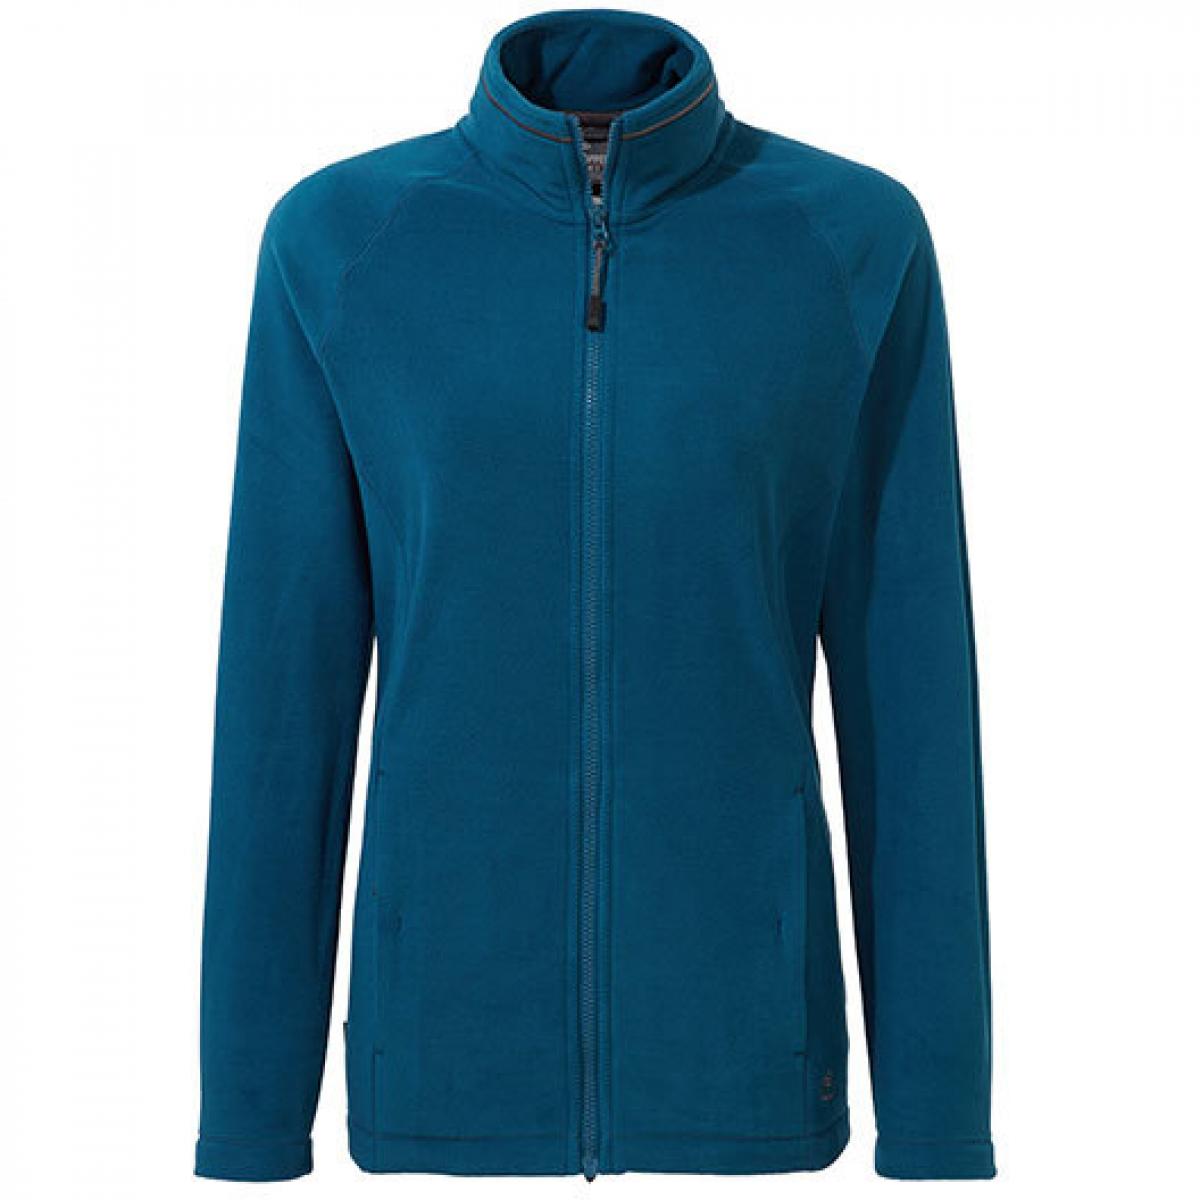 Hersteller: Craghoppers Expert Herstellernummer: CEA002 Artikelbezeichnung: Expert Womens Miska 200 Fleece Jacket Farbe: Poseidon Blue